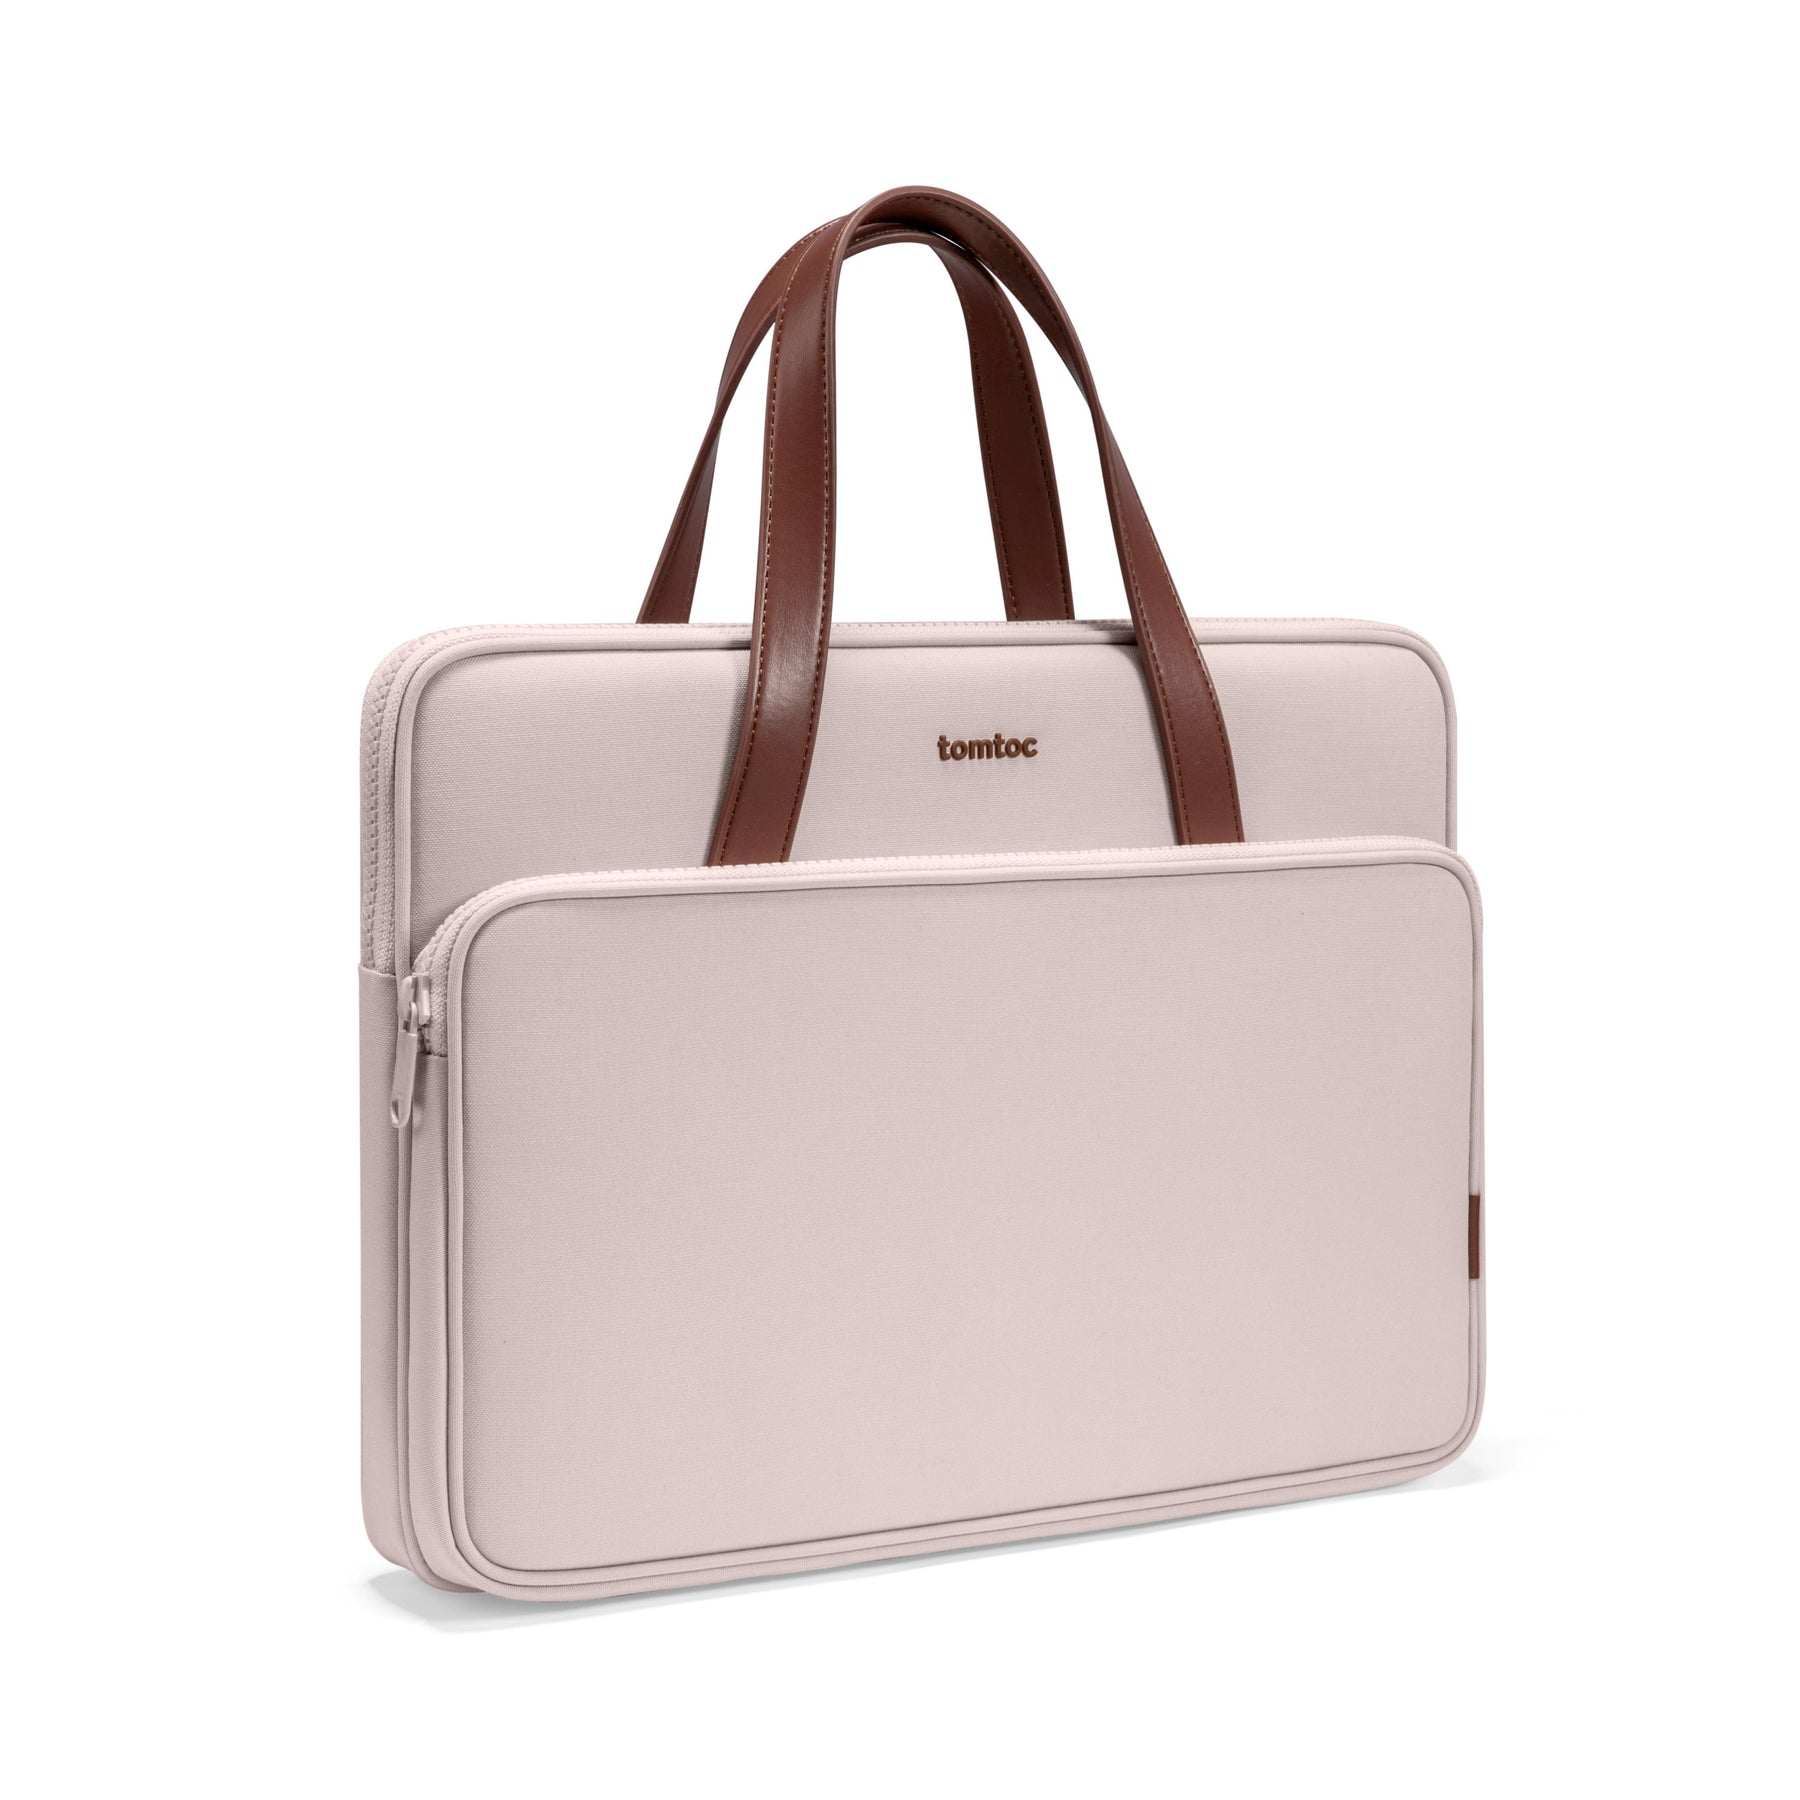 Versatile-A11 Laptop Handbag Blush Pink 13.5-inch